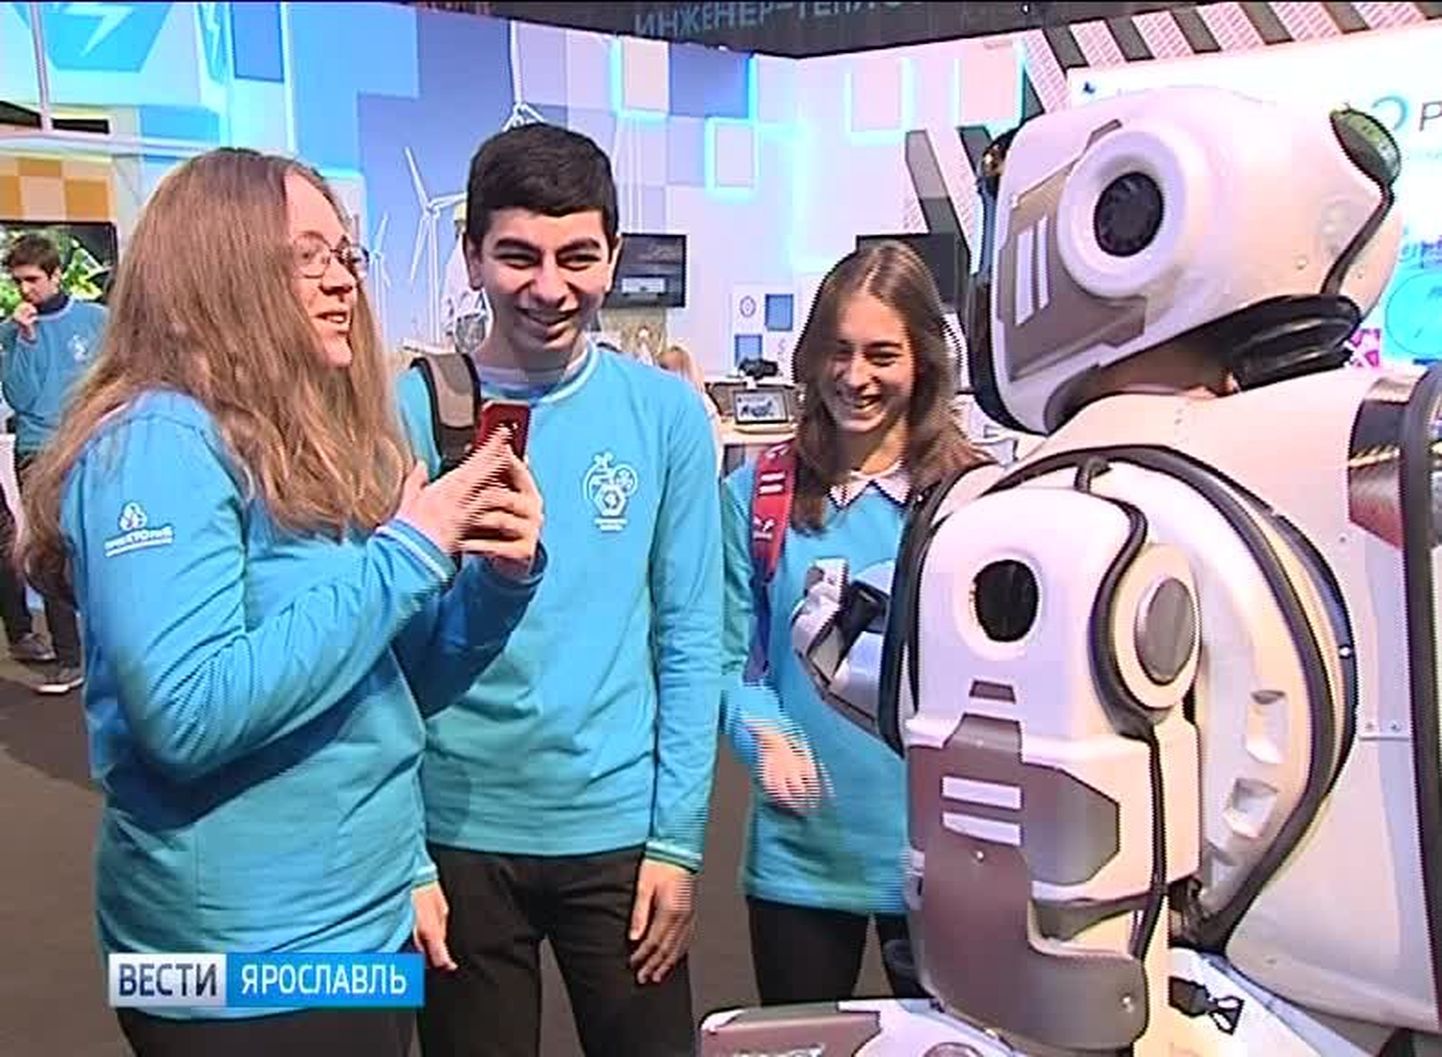 Tehnoloogiafoorumil esitletud moodne robot osutus inimeseks kostüümis.